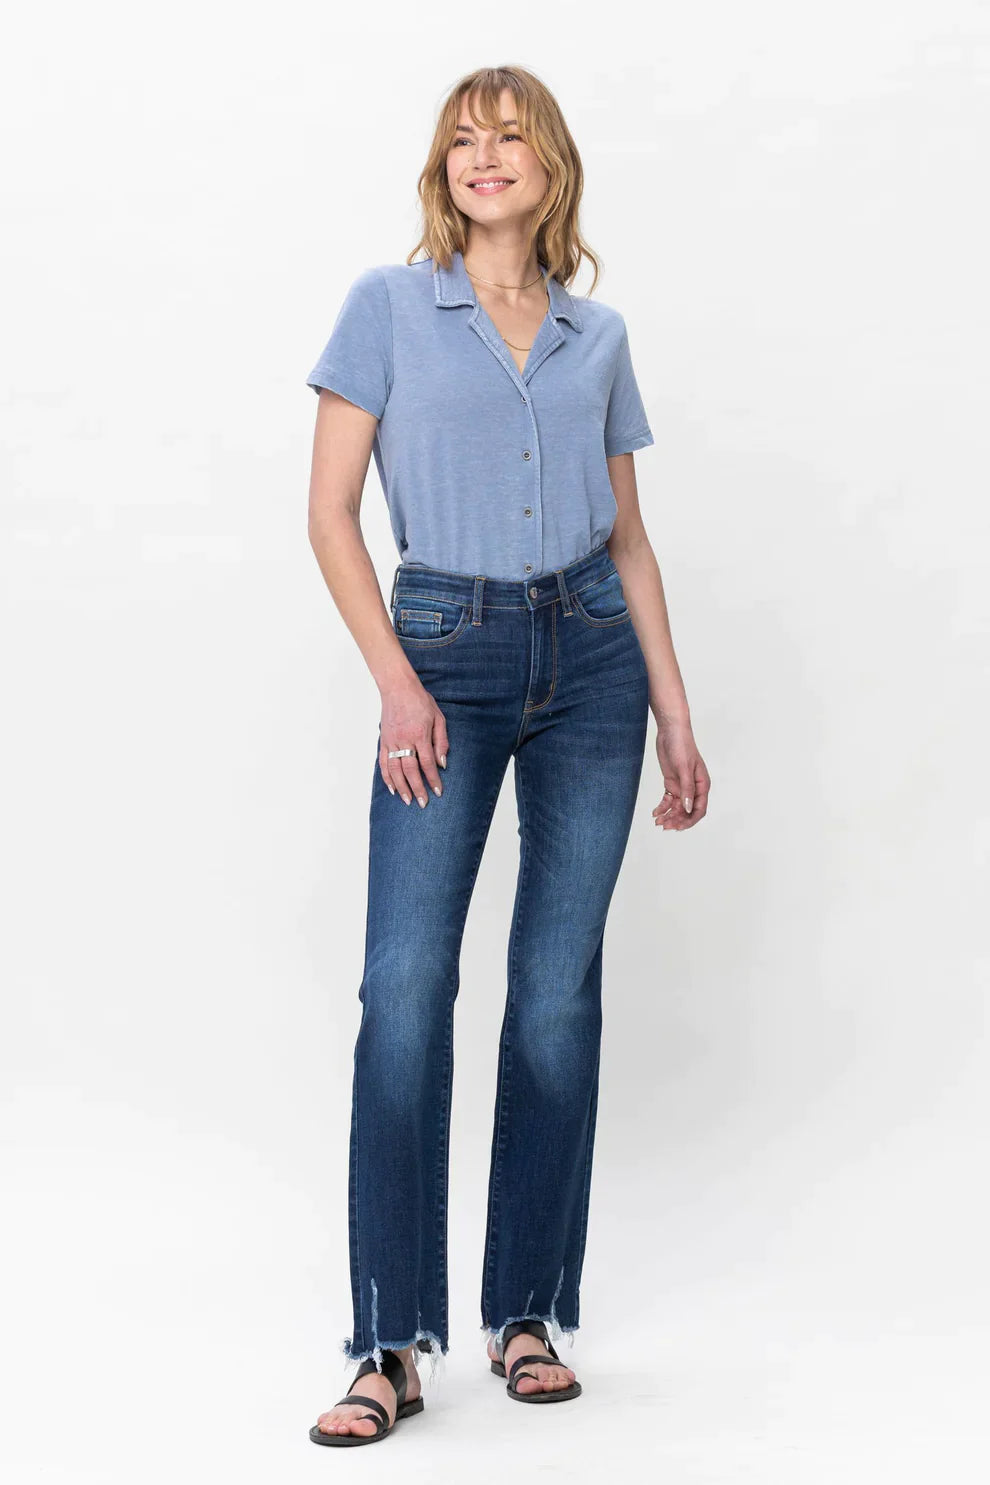 Judy Blue Dark Wash Bootcut Denim Jeans Plus Size